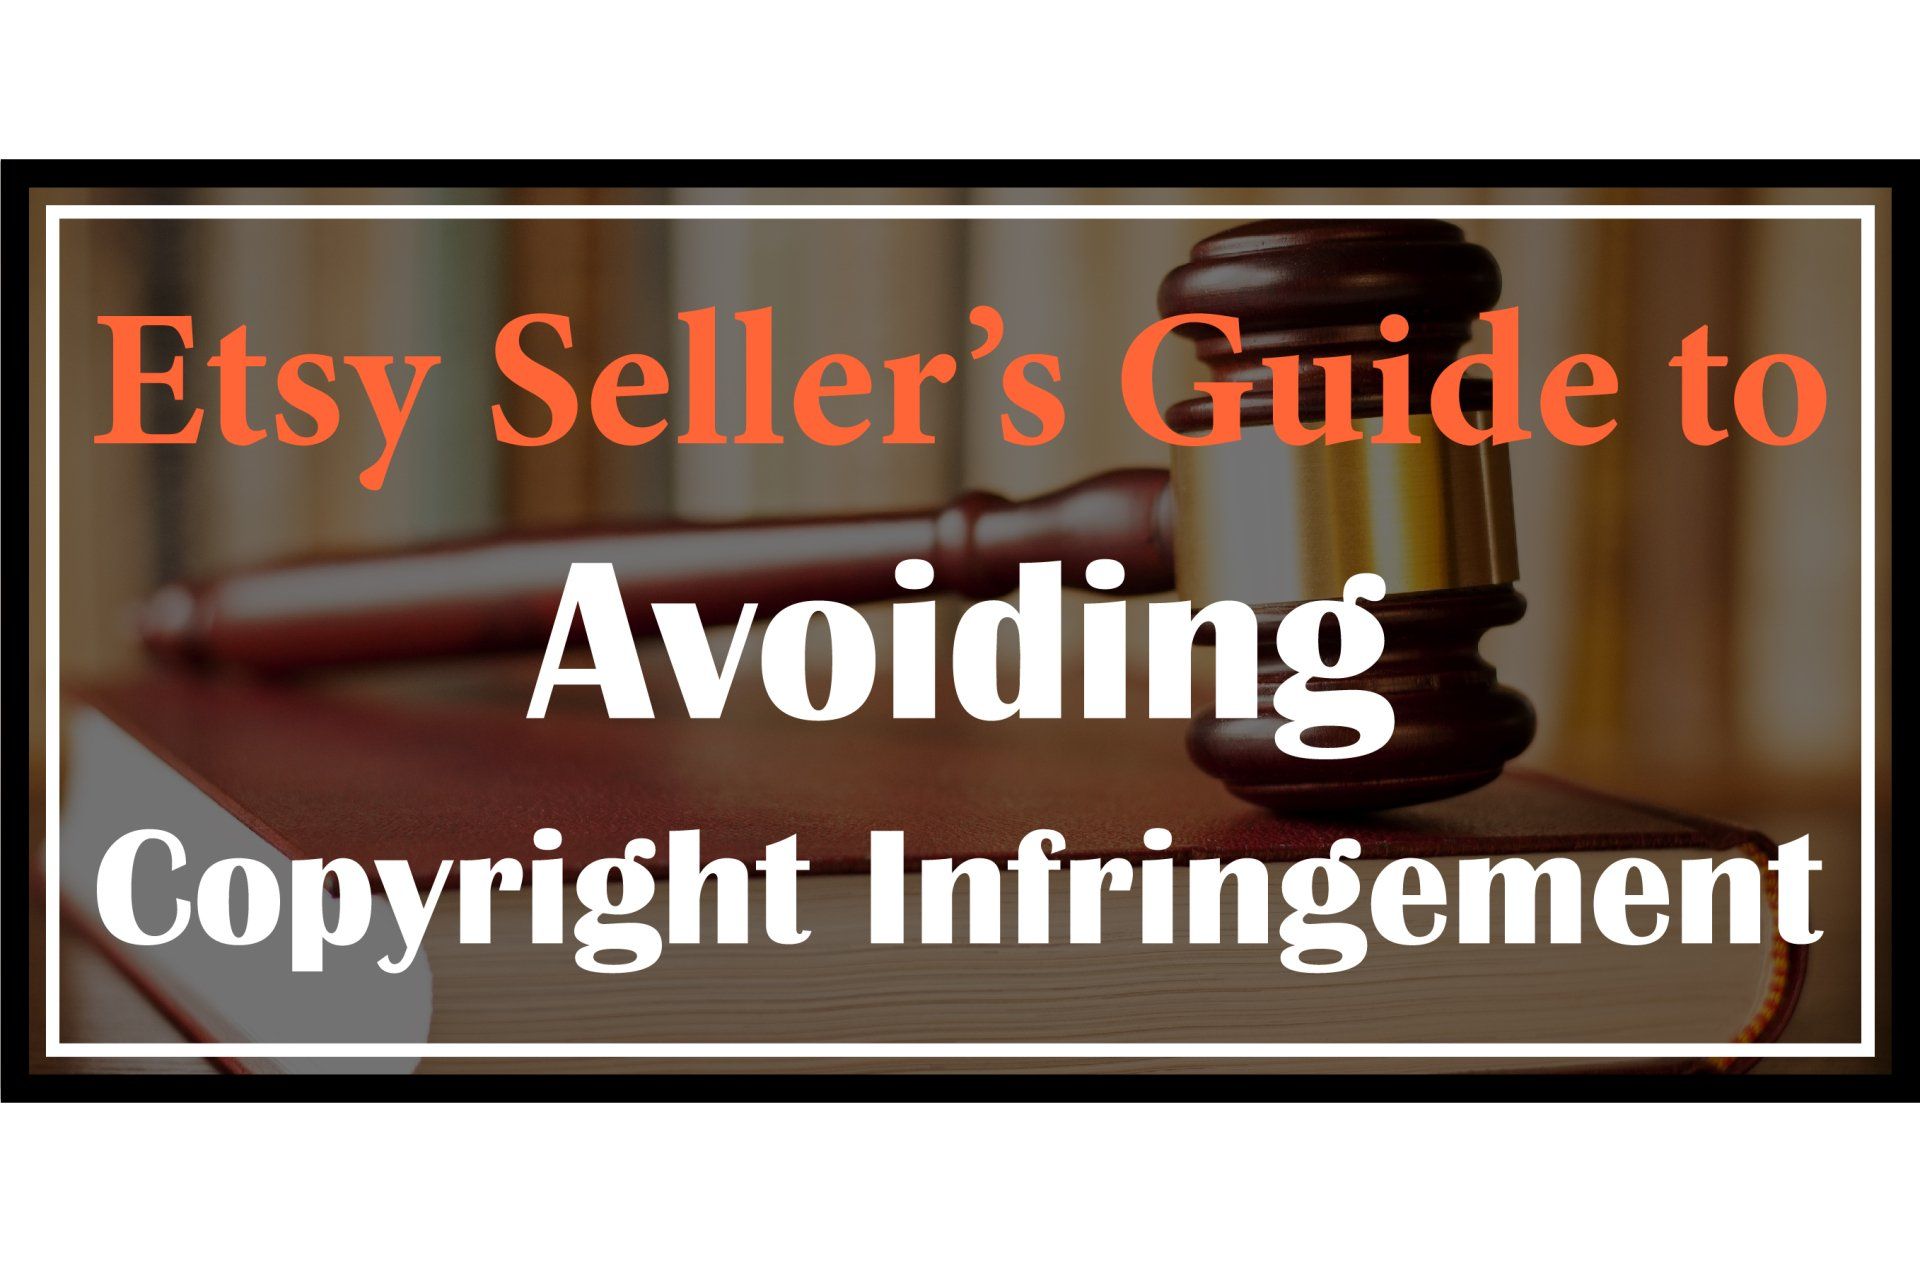 Etsy Seller’s Guide to Avoiding Copyright Infringement